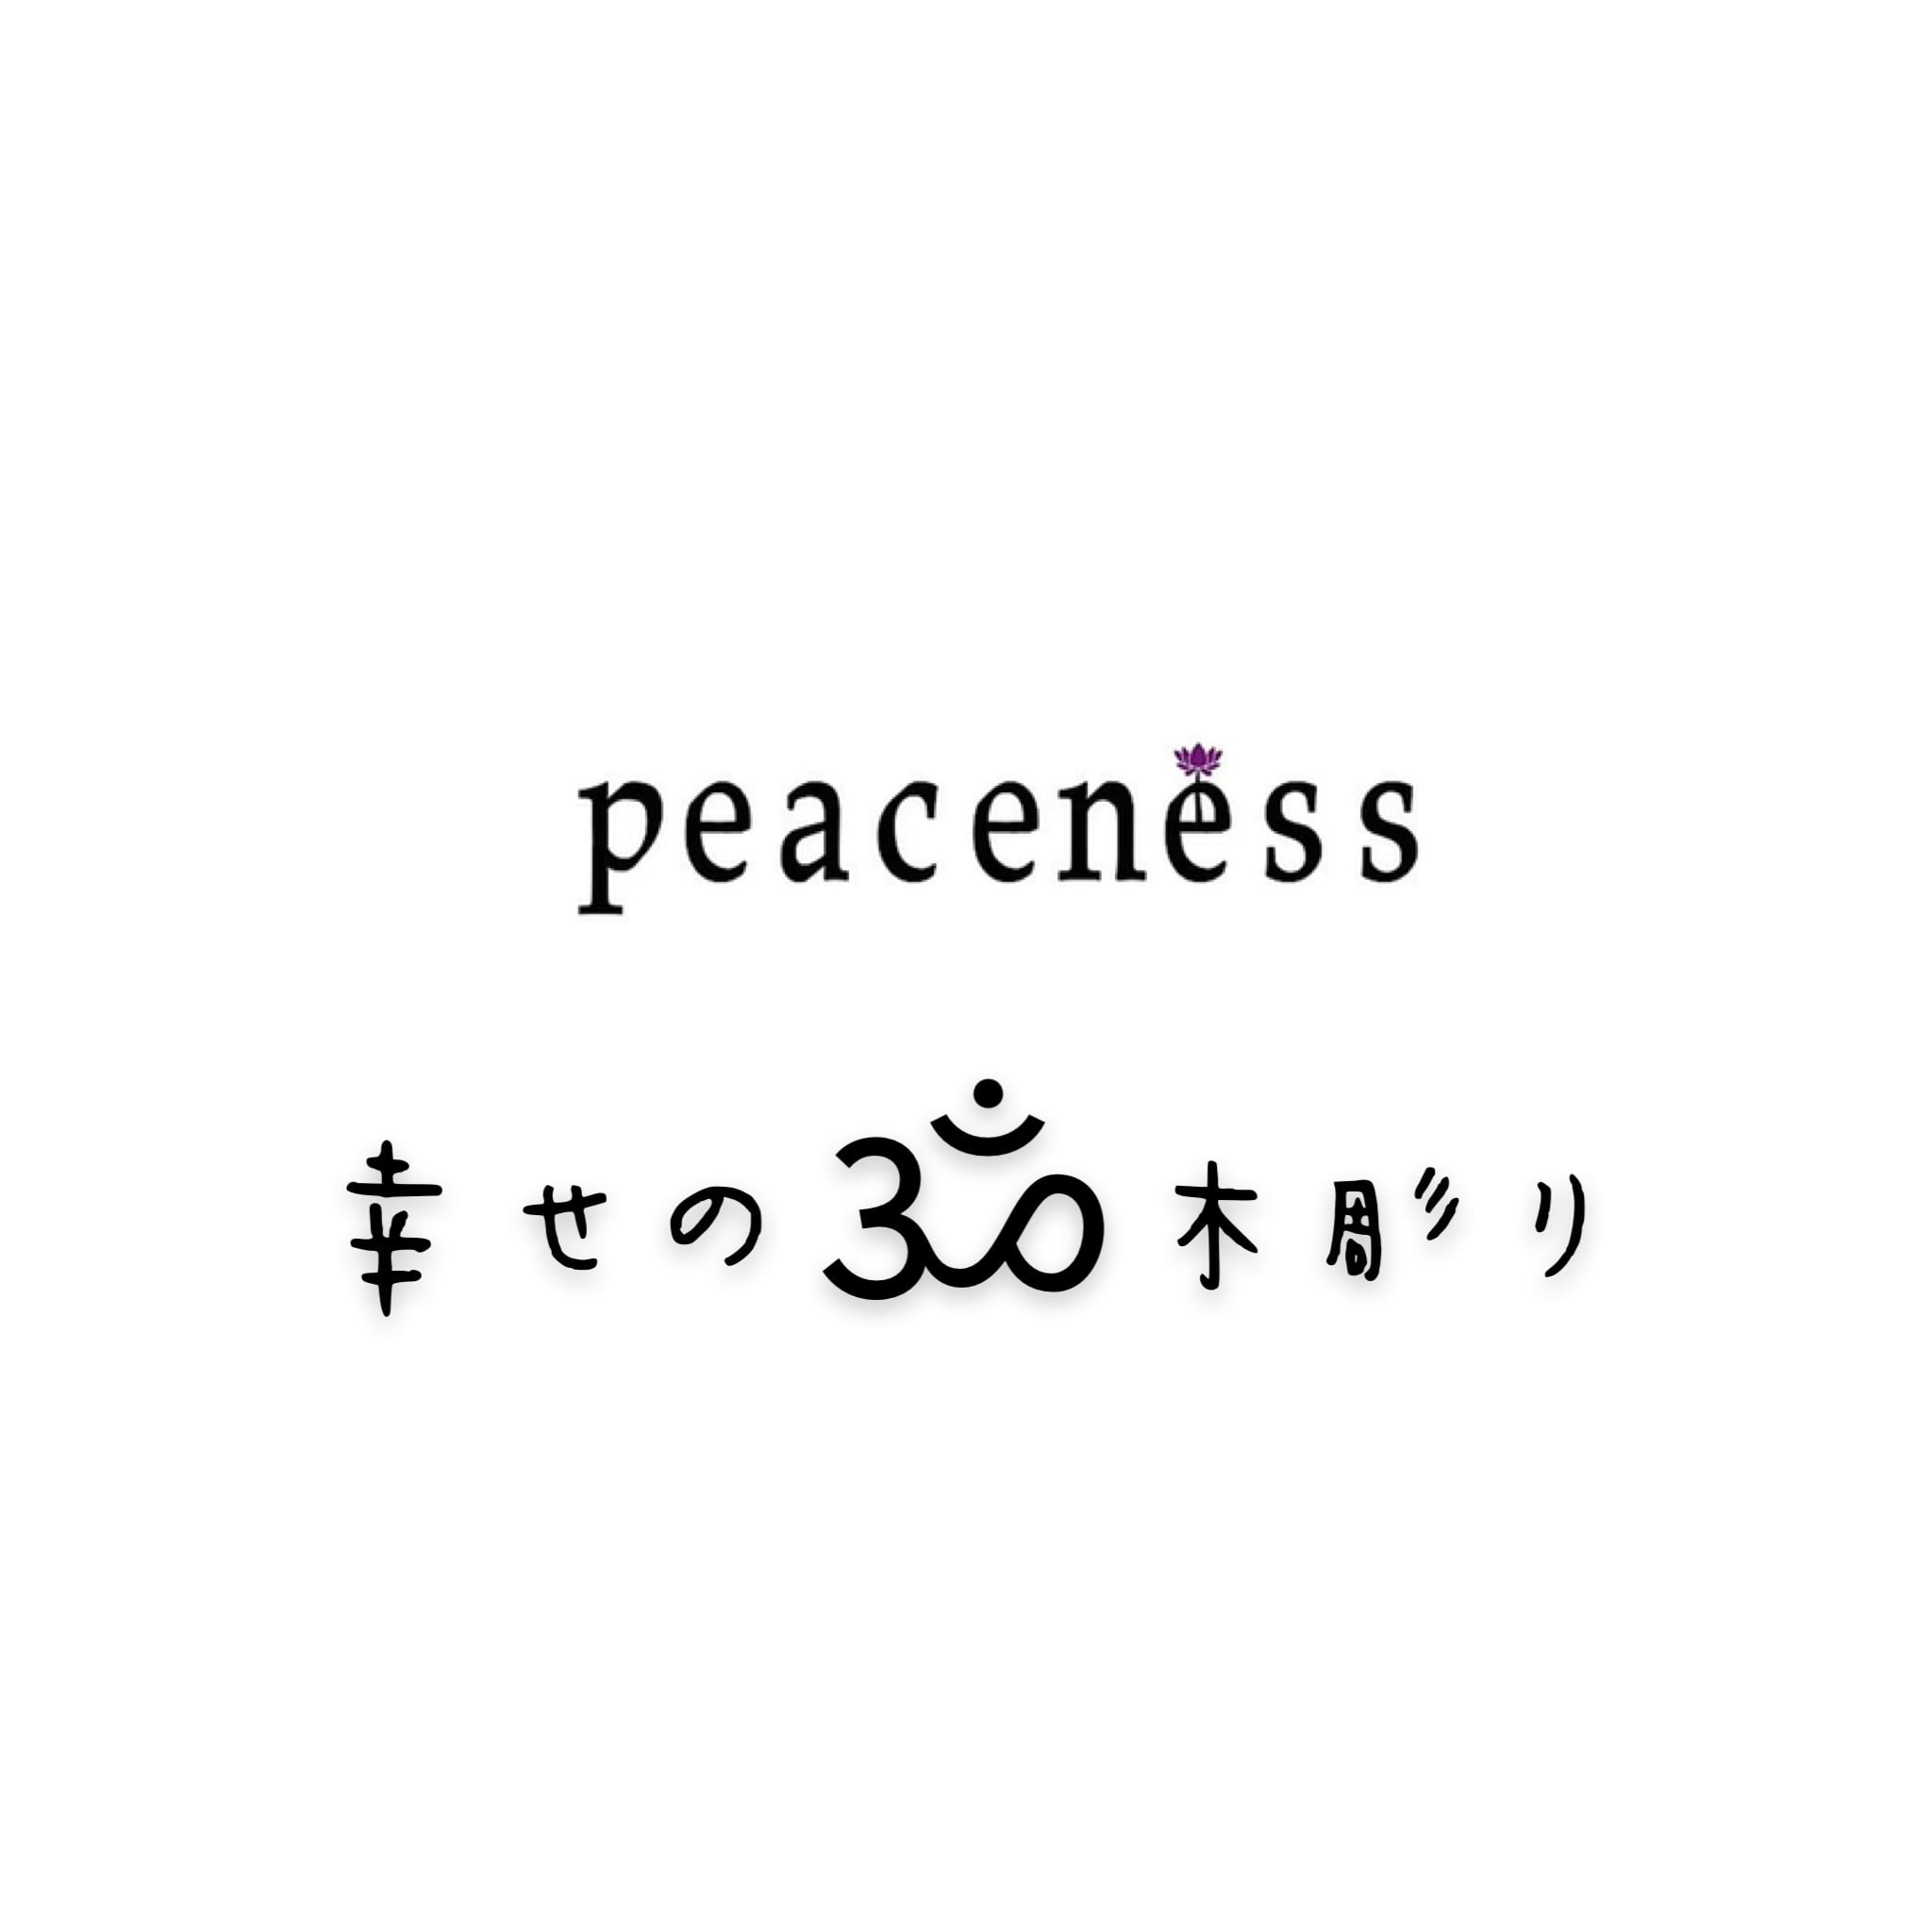 peaceness